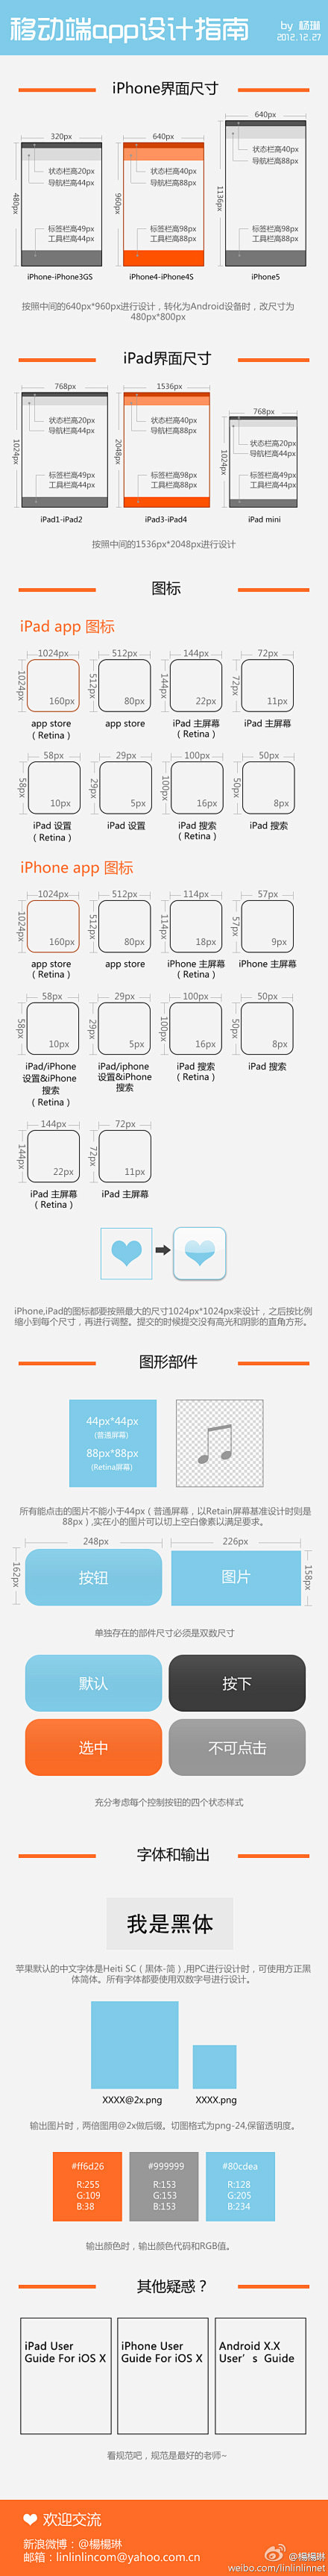 ipad&iphone尺寸规范